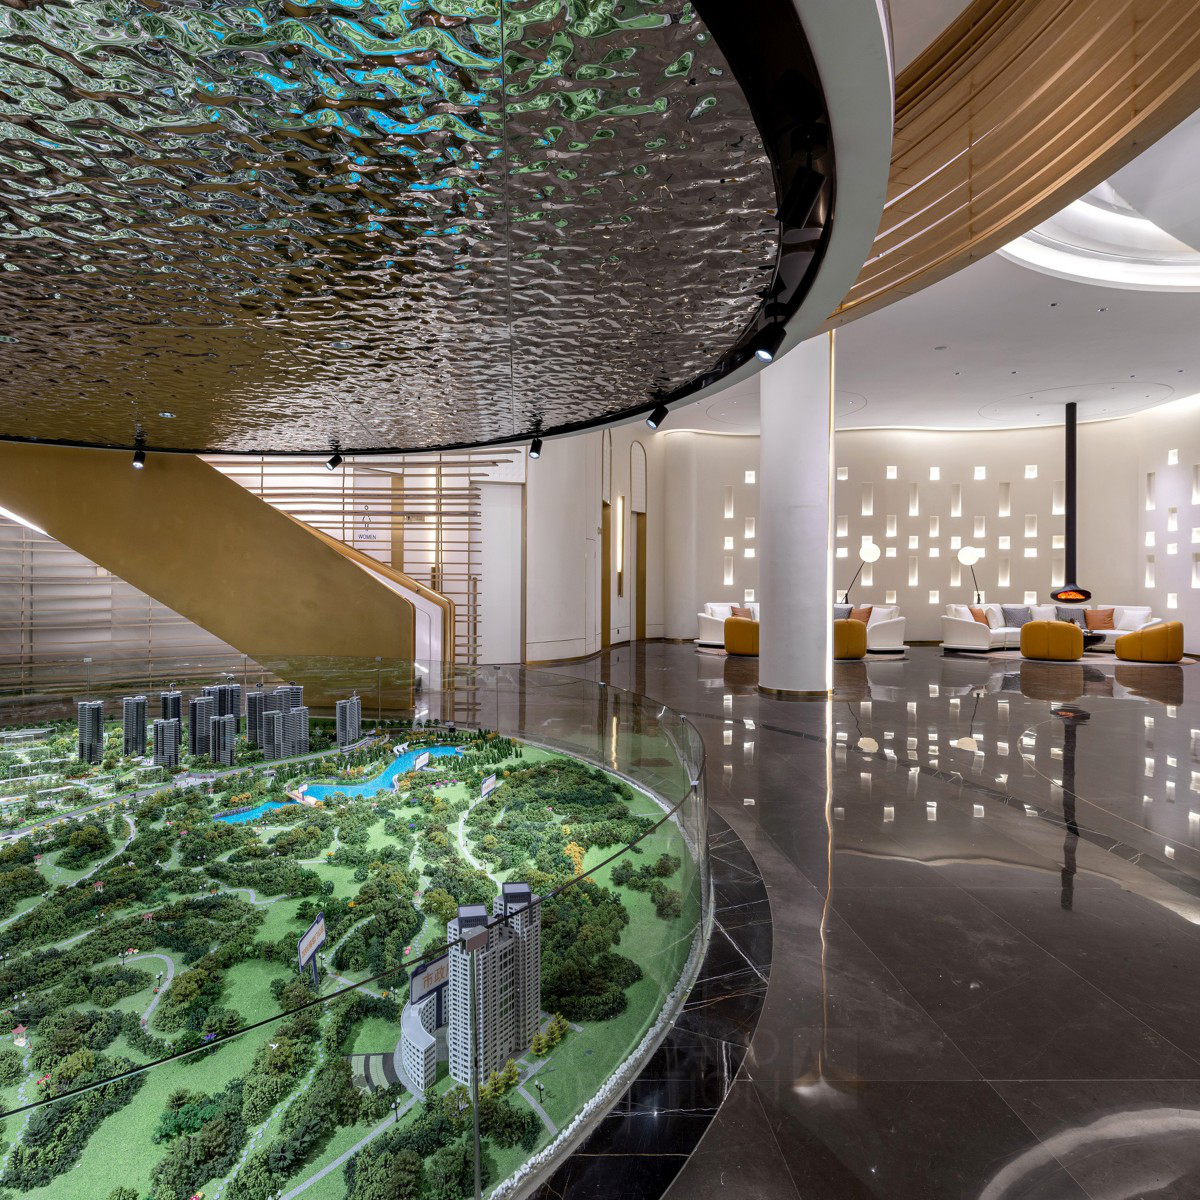 Huaihua Â· Hexing Peninsula City Center: A Modern Marketing Center Blending Art and Water